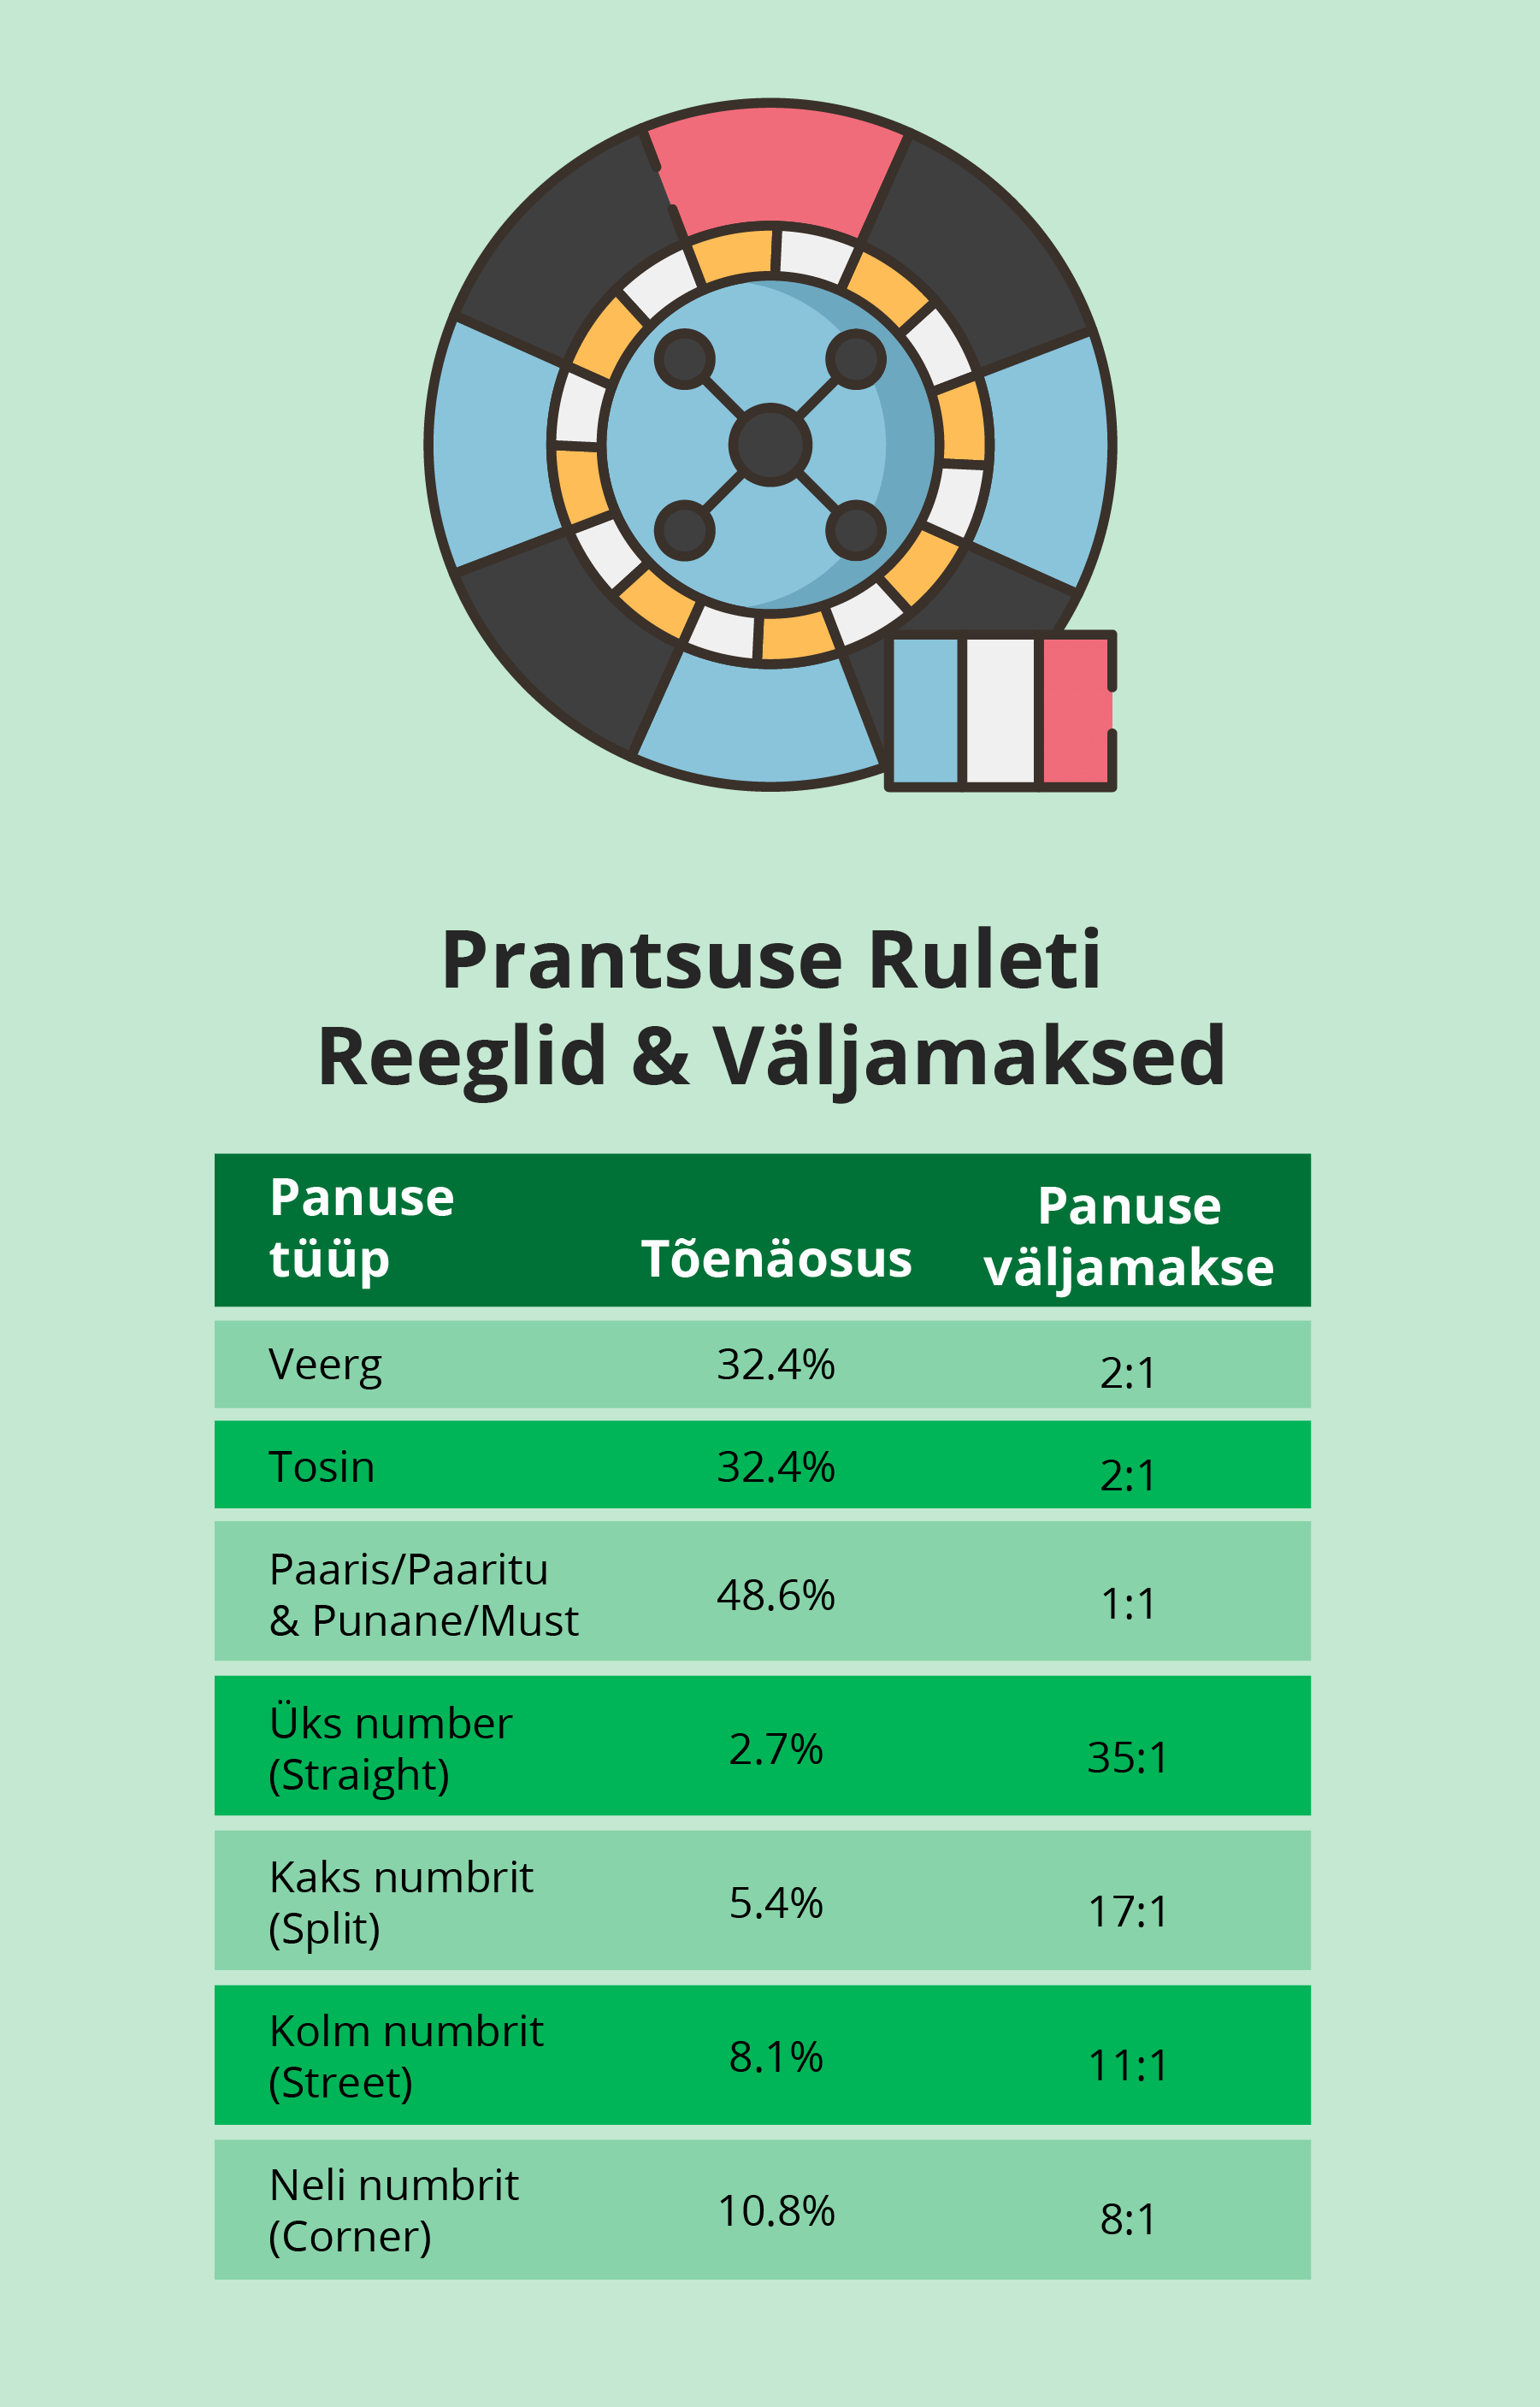 Prantsuse ruleti reeglid ja väljamaksed